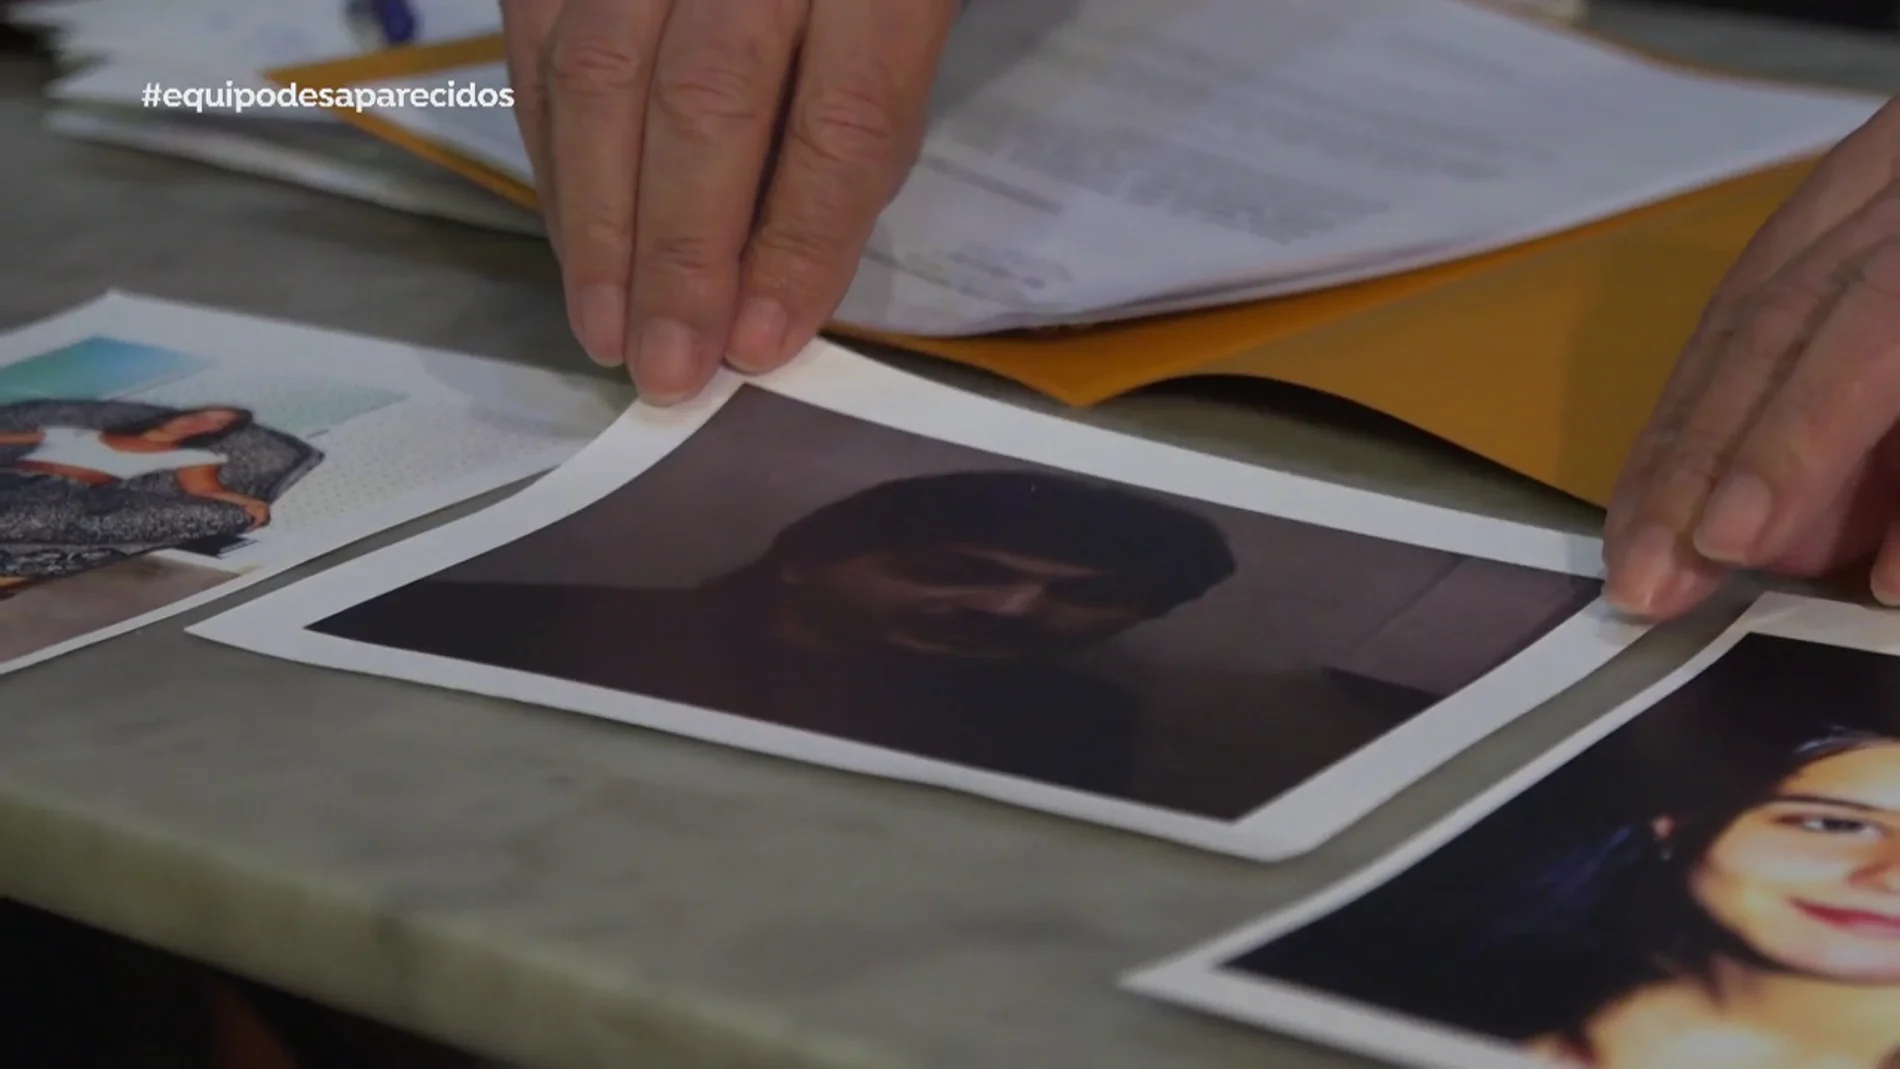 La inquietante desaparición de Cristina Bergua: su novio "amenazó a una niña de 13 años" que tuvo una relación con él